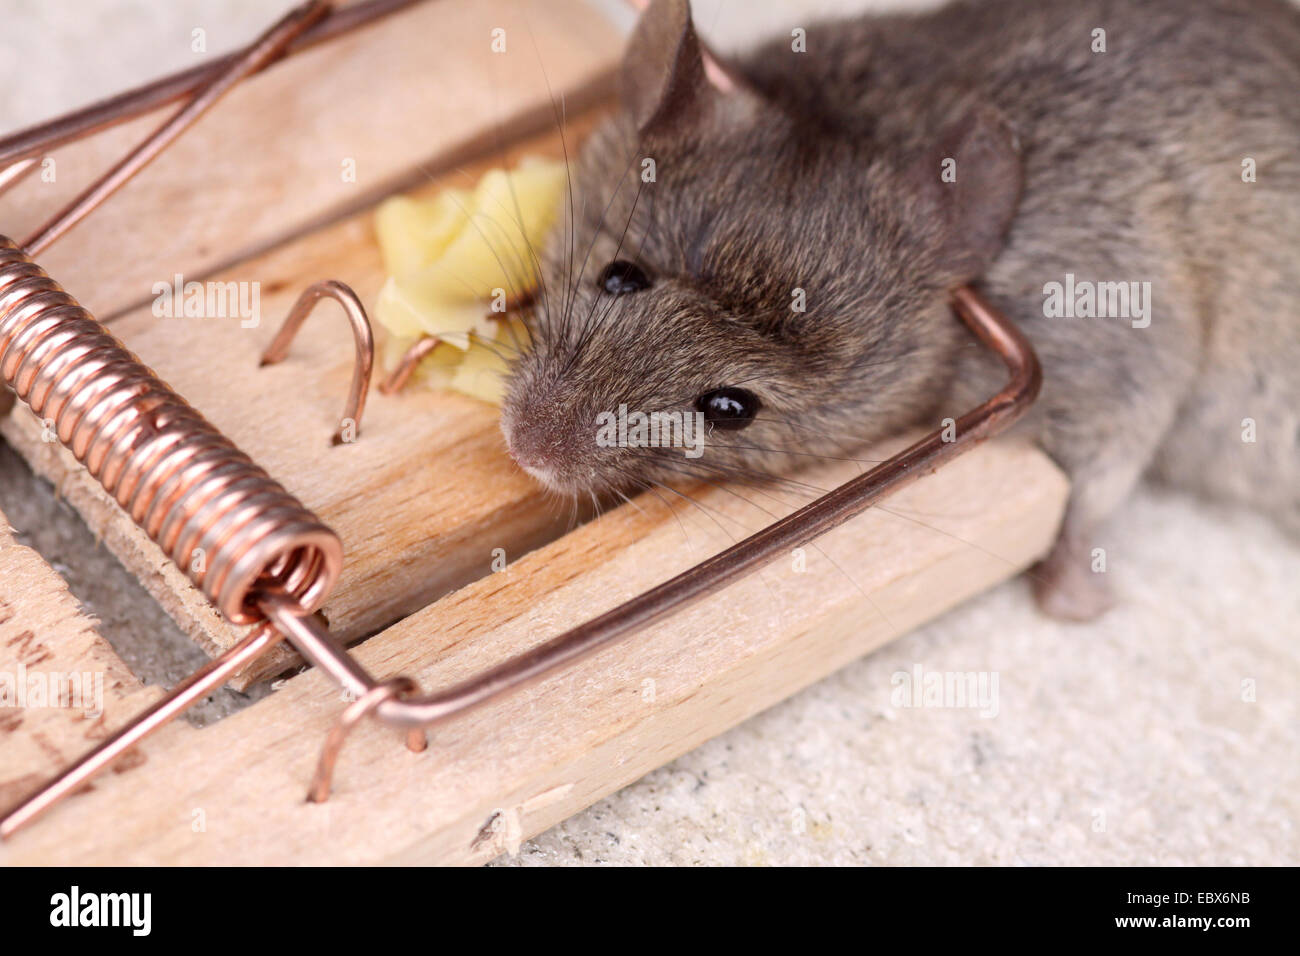 Souris domestique (Mus musculus), souris morte dans une souricière Banque D'Images